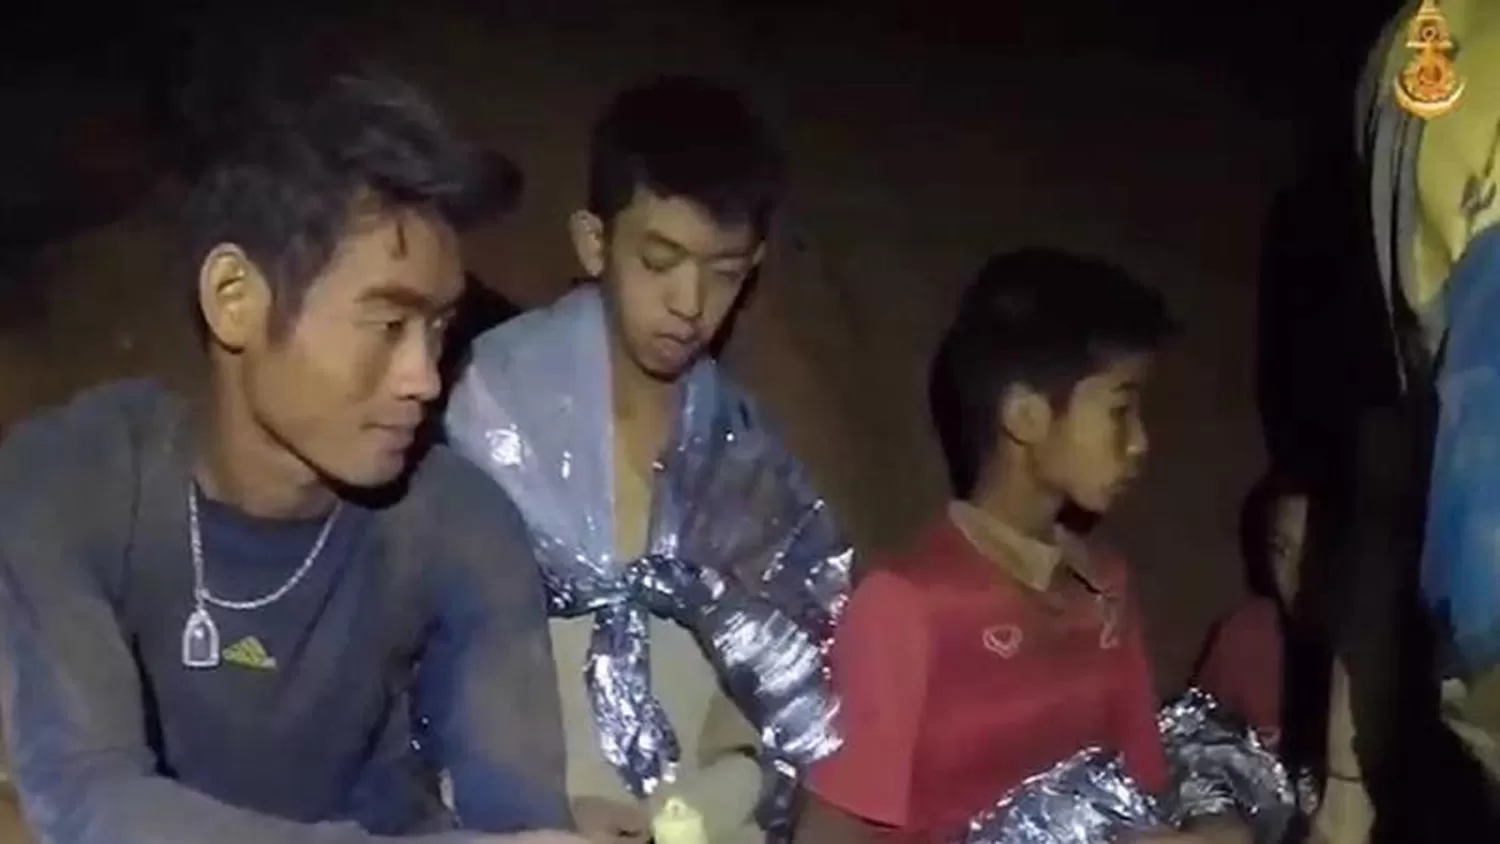 El entrenador y algunos de los niños atrapados en una cueva. FOTO TOMADA DE PRESSDIGITAL.